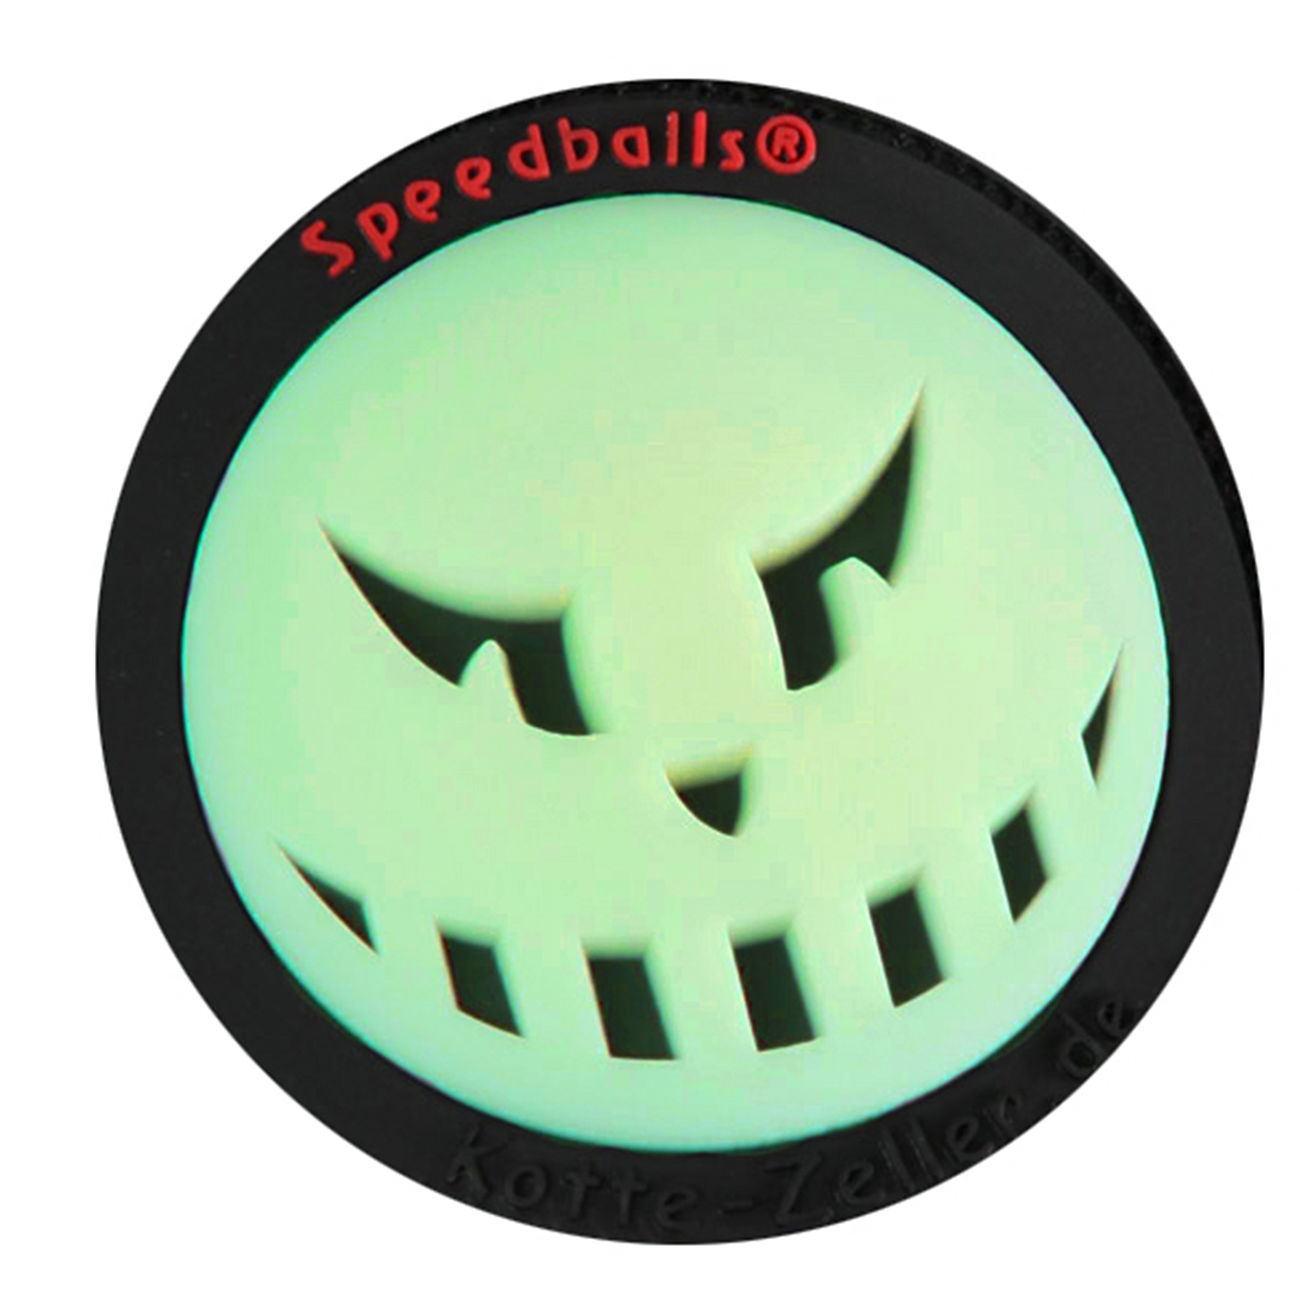 3D Rubber Patch Speedballs schwarz glow nachleuchtend Bild 1